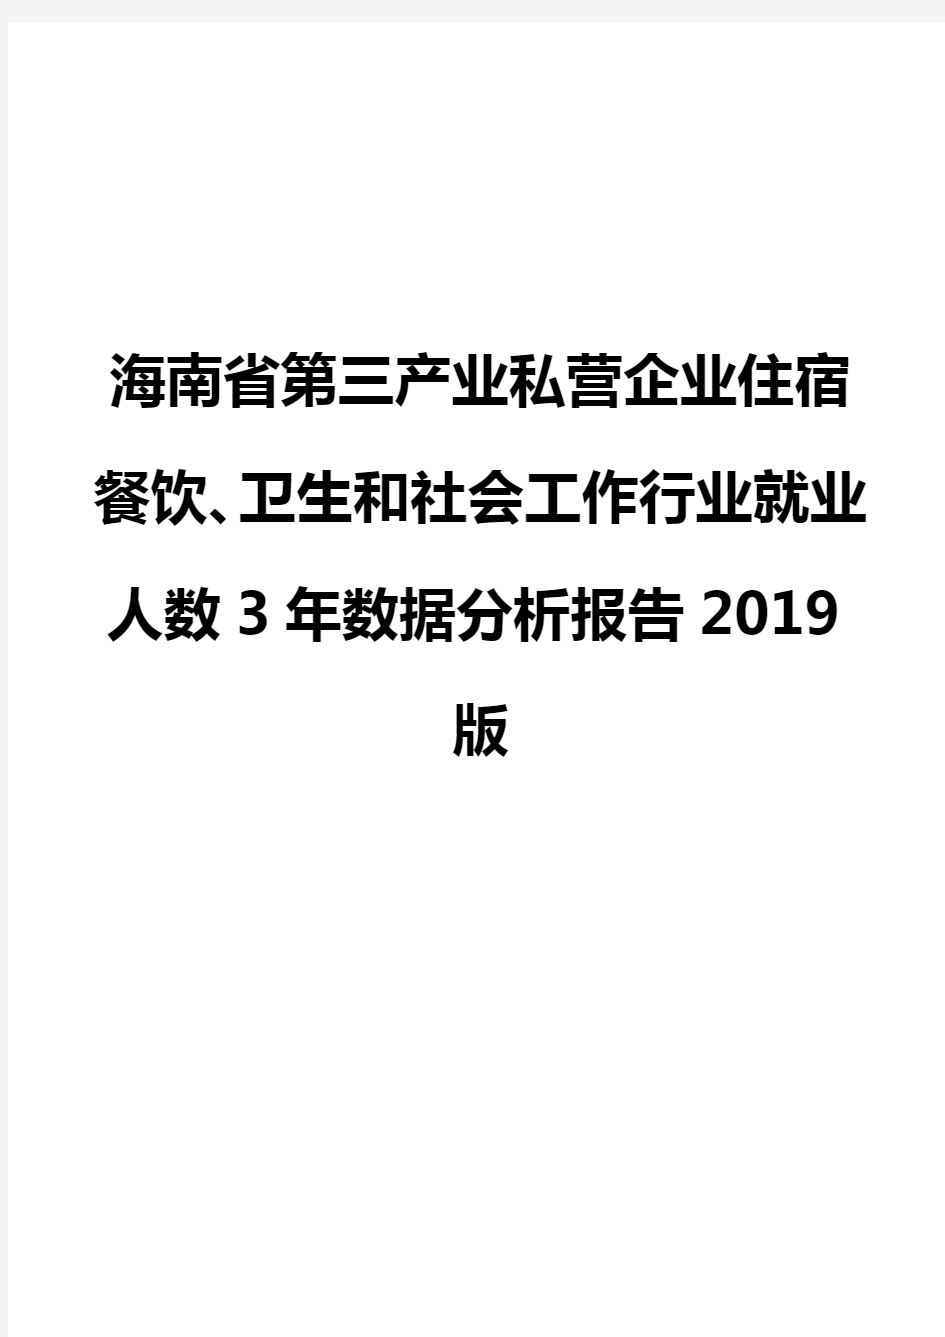 海南省第三产业私营企业住宿餐饮、卫生和社会工作行业就业人数3年数据分析报告2019版